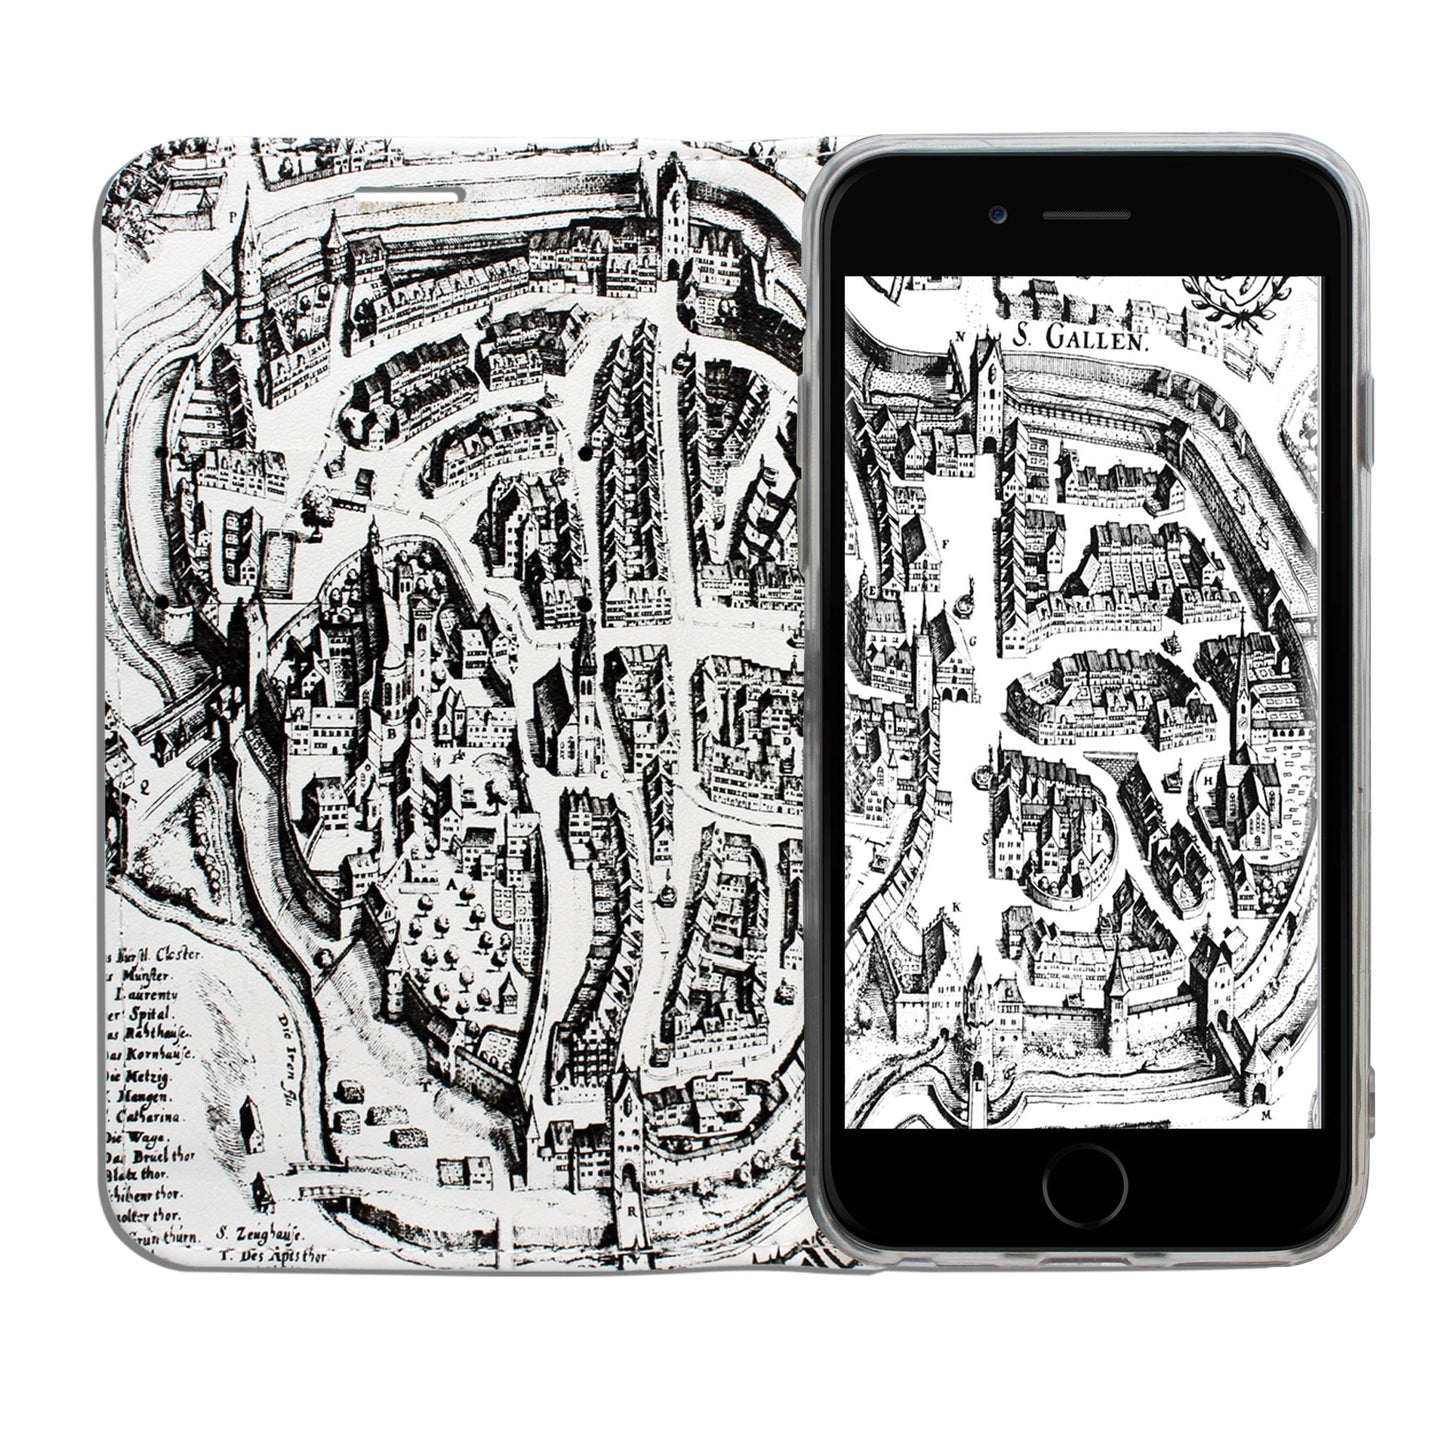 Coque St. Gallen Merian Panorama pour iPhone 6/6S/7/8 Plus